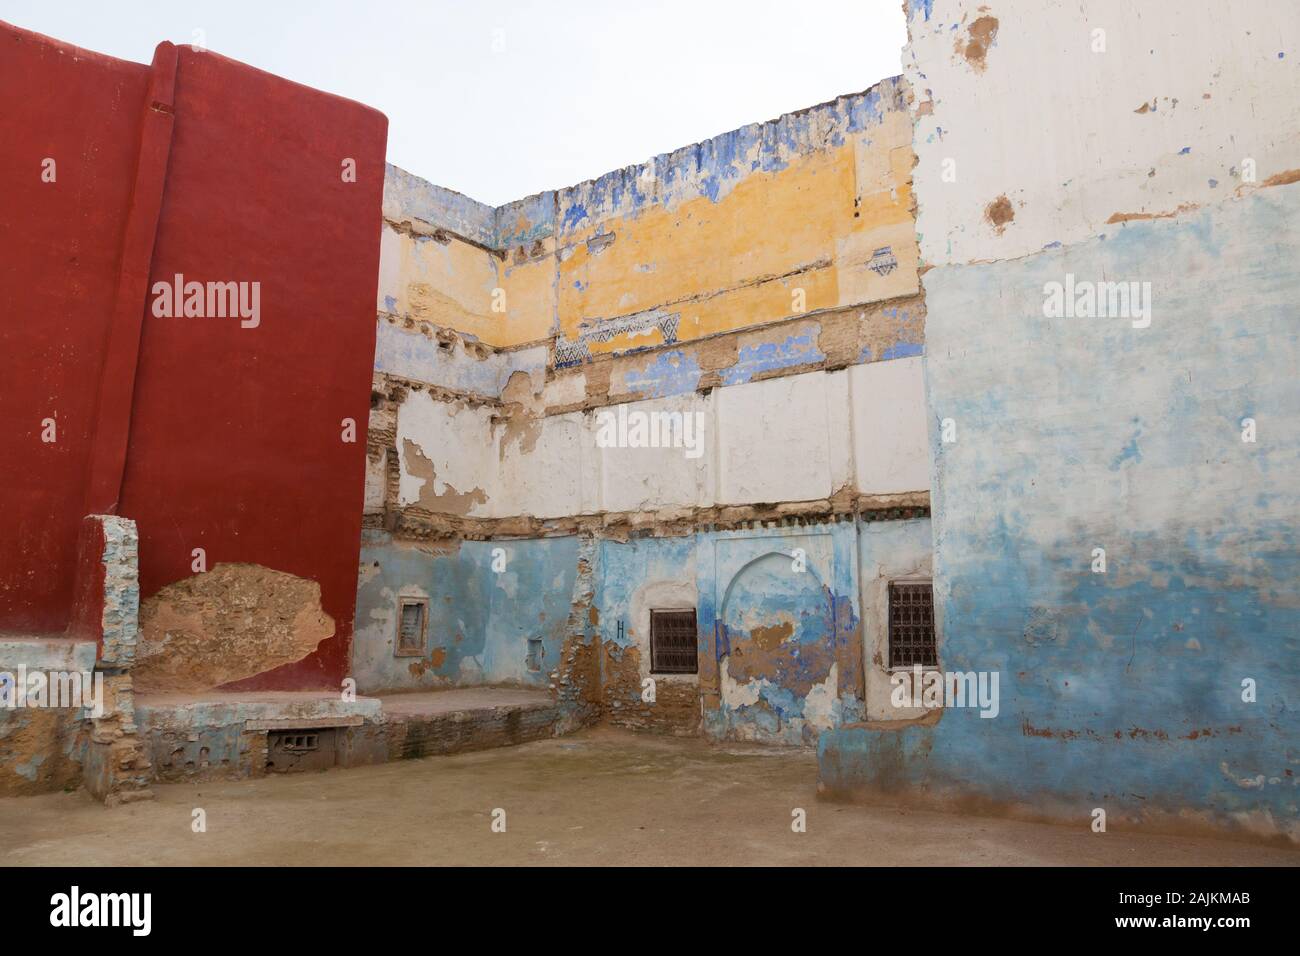 Bunte Gebäude in Fes (auch Fez genannt) mit etwas Putz, der von den Wänden abfällt, Marokko Stockfoto